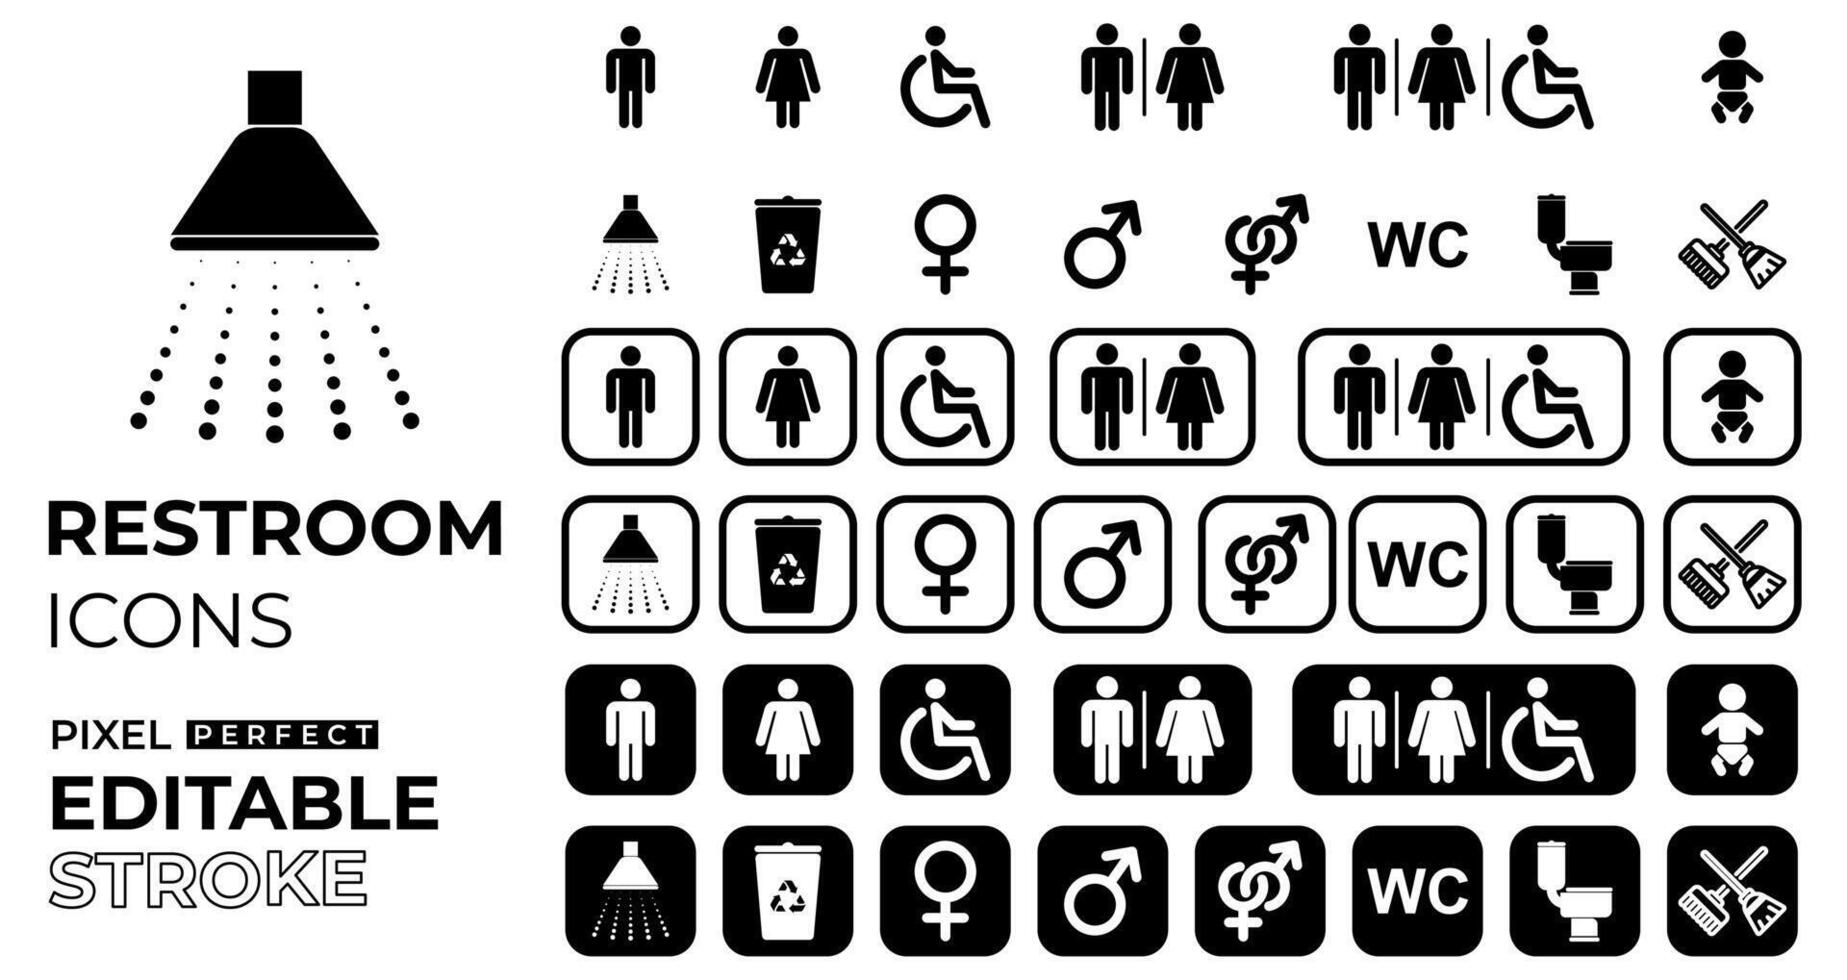 toilet of rust uit kamer pictogrammen reeks met mannelijk, vrouw, rolstoel of gehandicapt, baby, douche, transgender, recyclen, wc, schoon tekens met bewerkbare beroerte vector